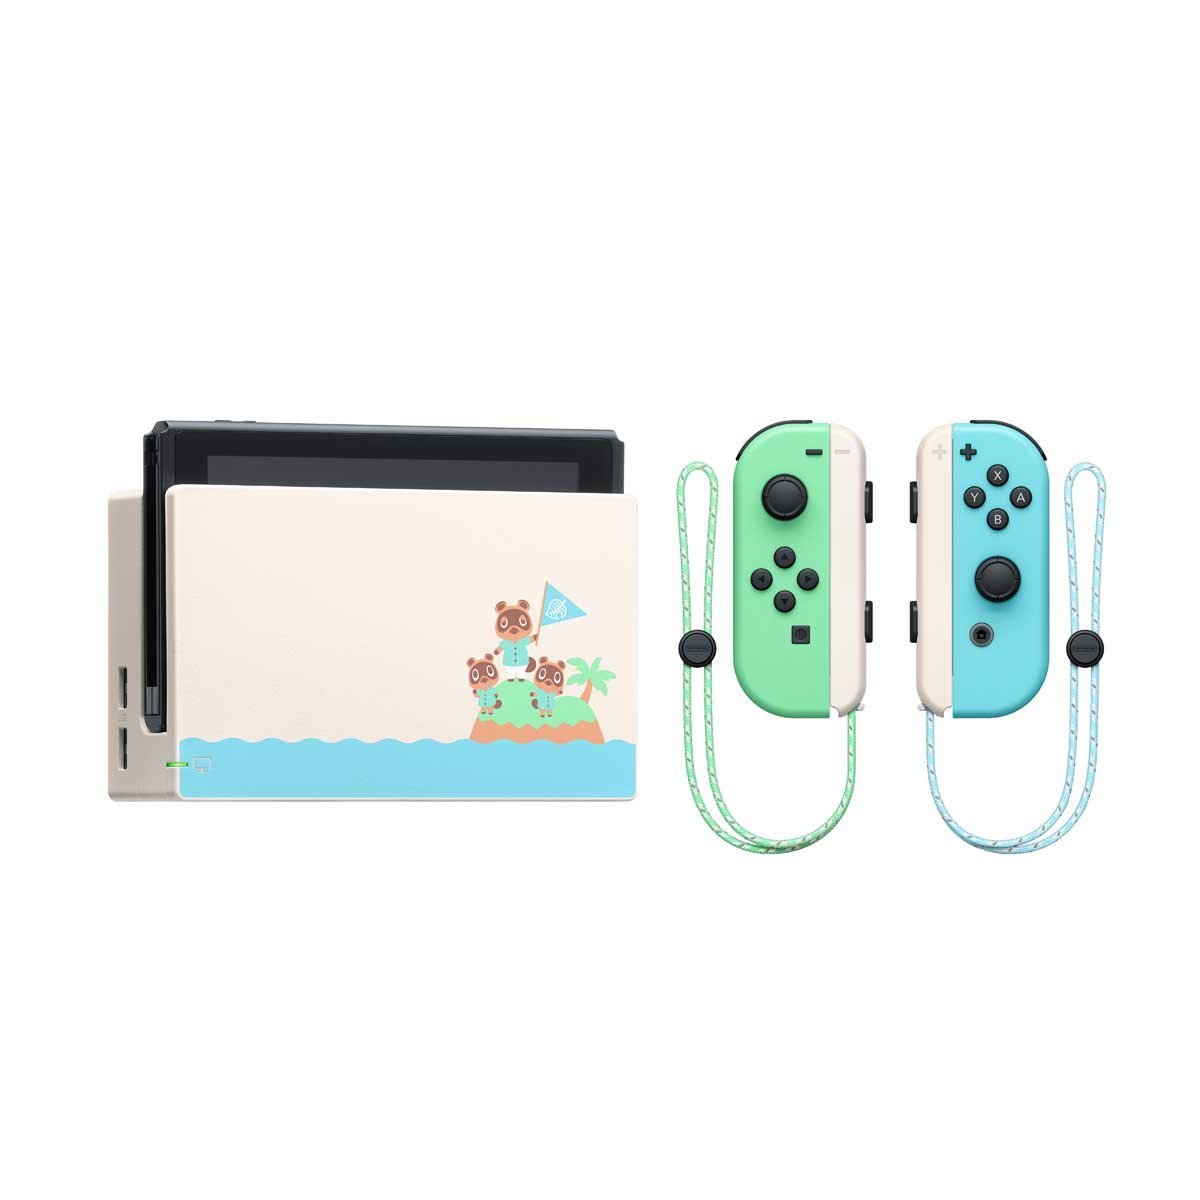 Consola Nintendo Switch Edición Especial Animal Crossing